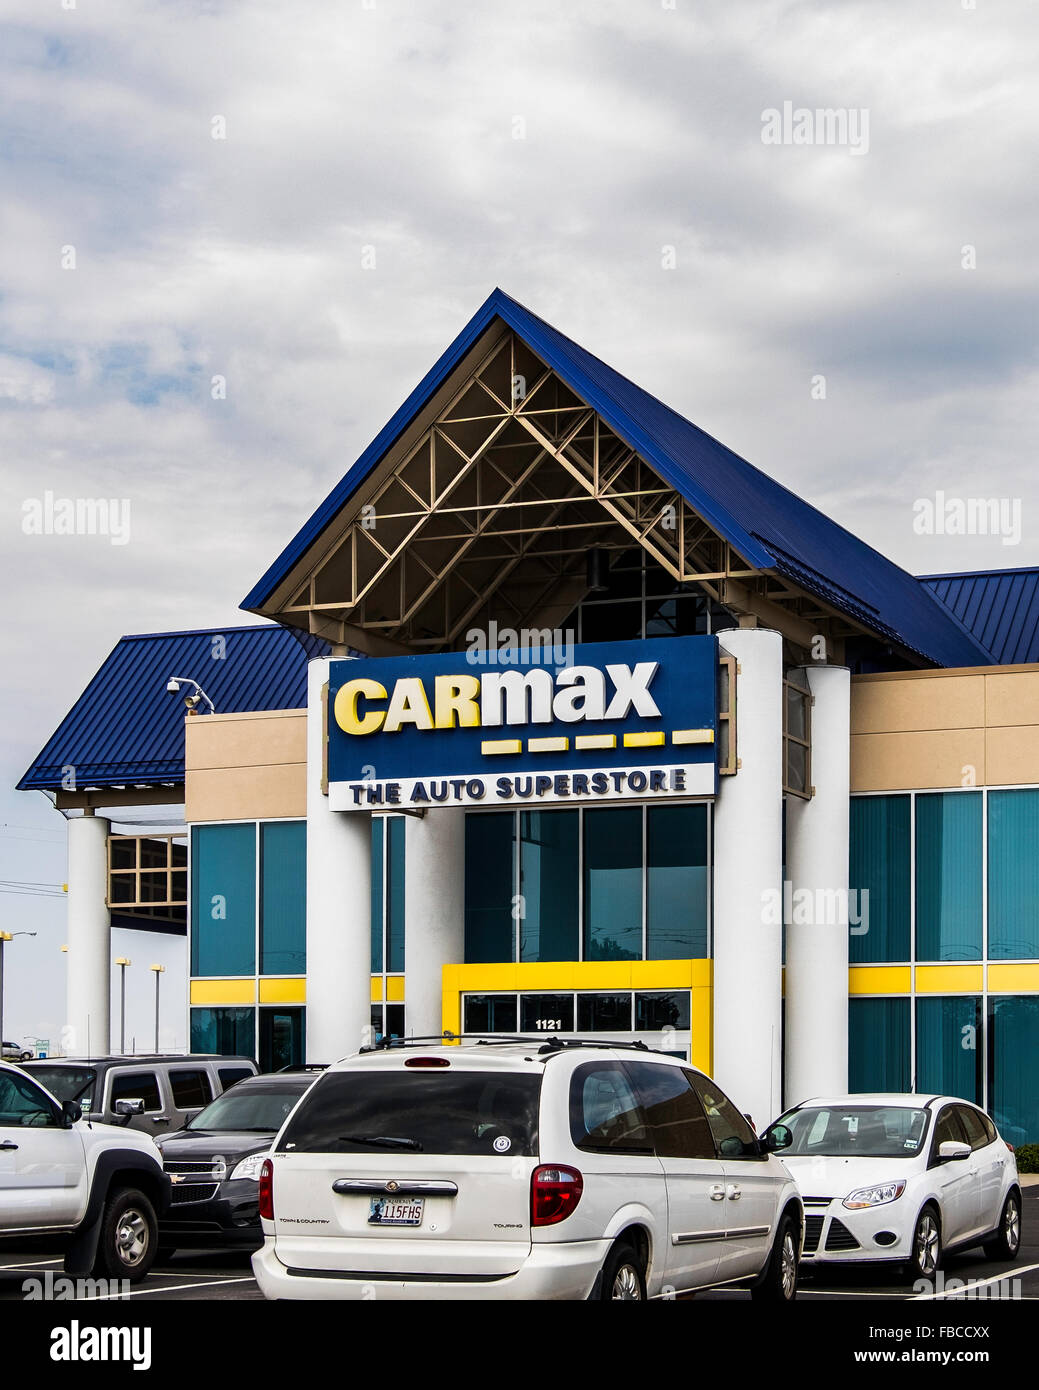 El escaparate de CarMax, un distribuidor de automóviles usados en Edmond, Oklahoma, Estados Unidos. Foto de stock